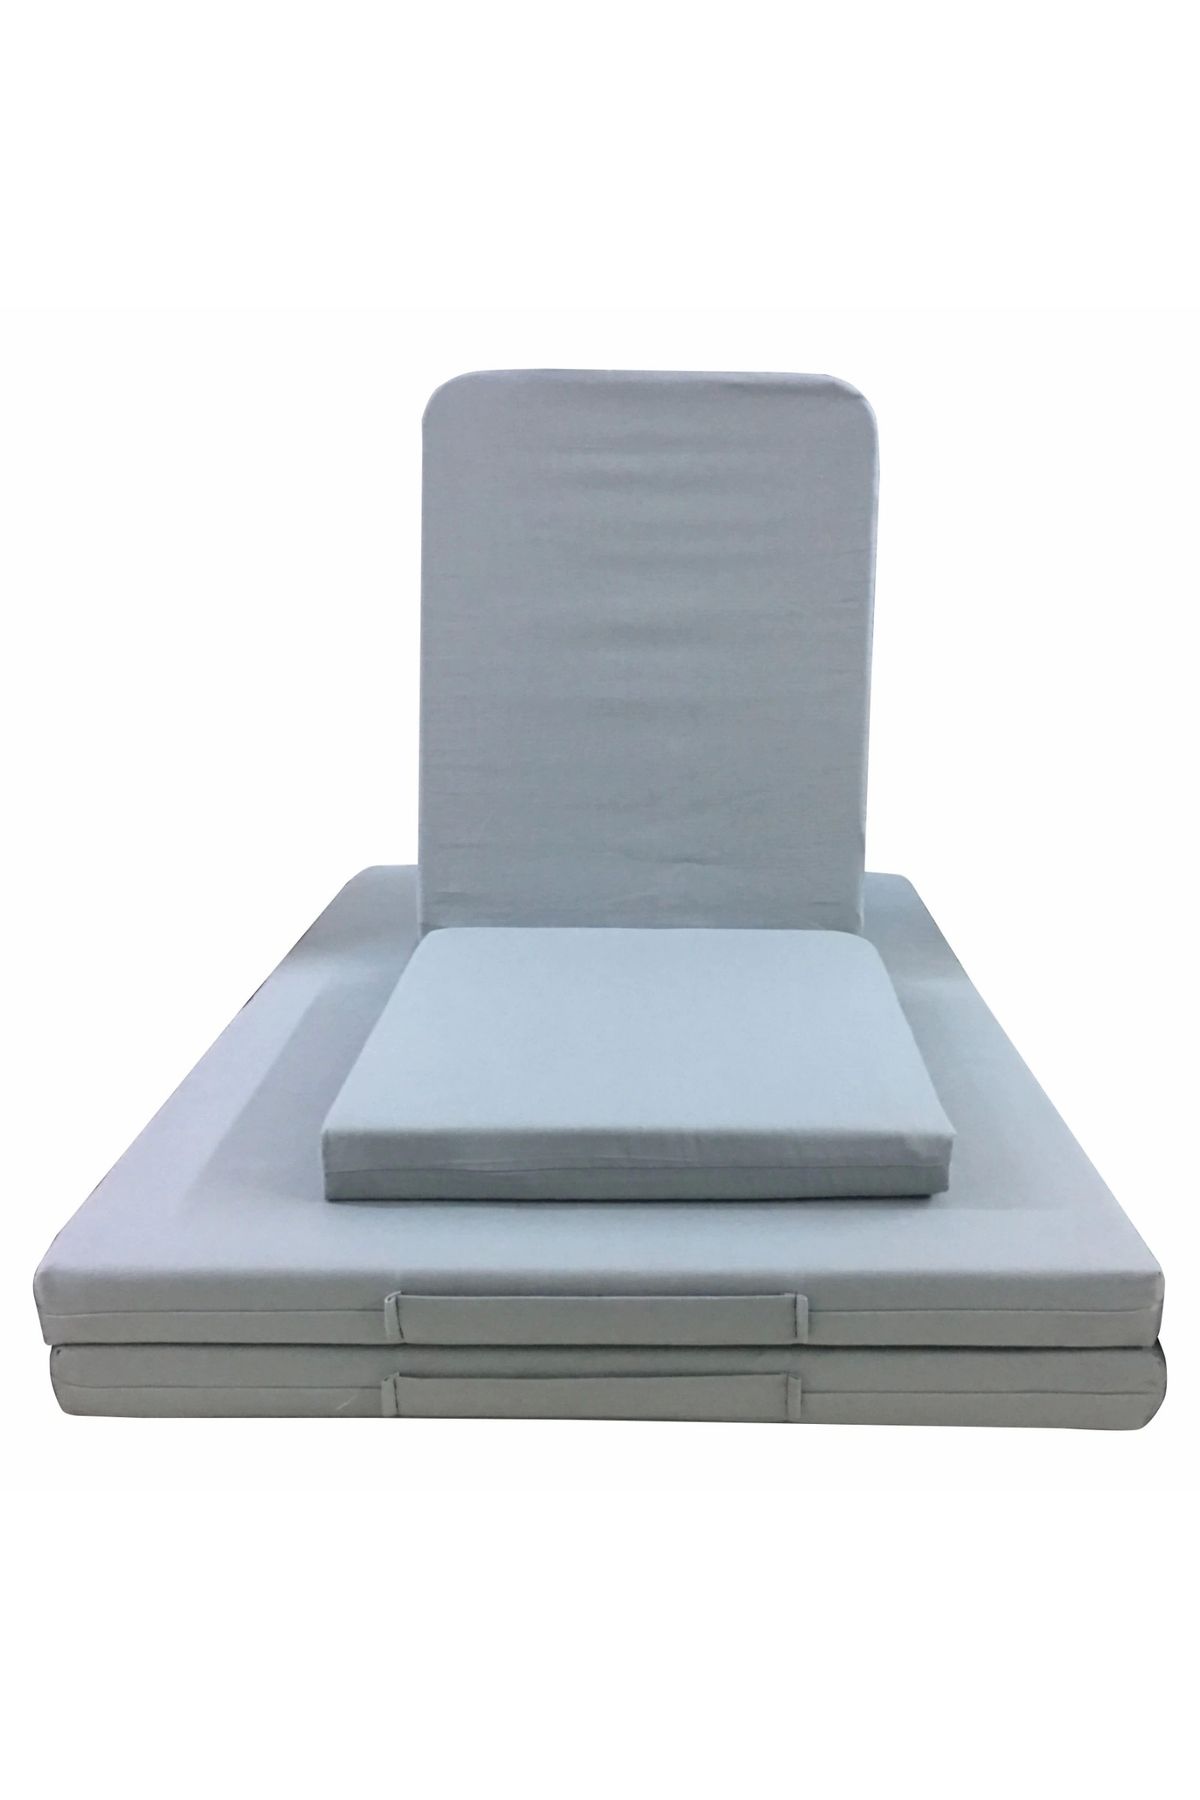 SIFIR312 Katlanır Meditasyon Yatağı Meditasyon Sandalyesi Ikili Set